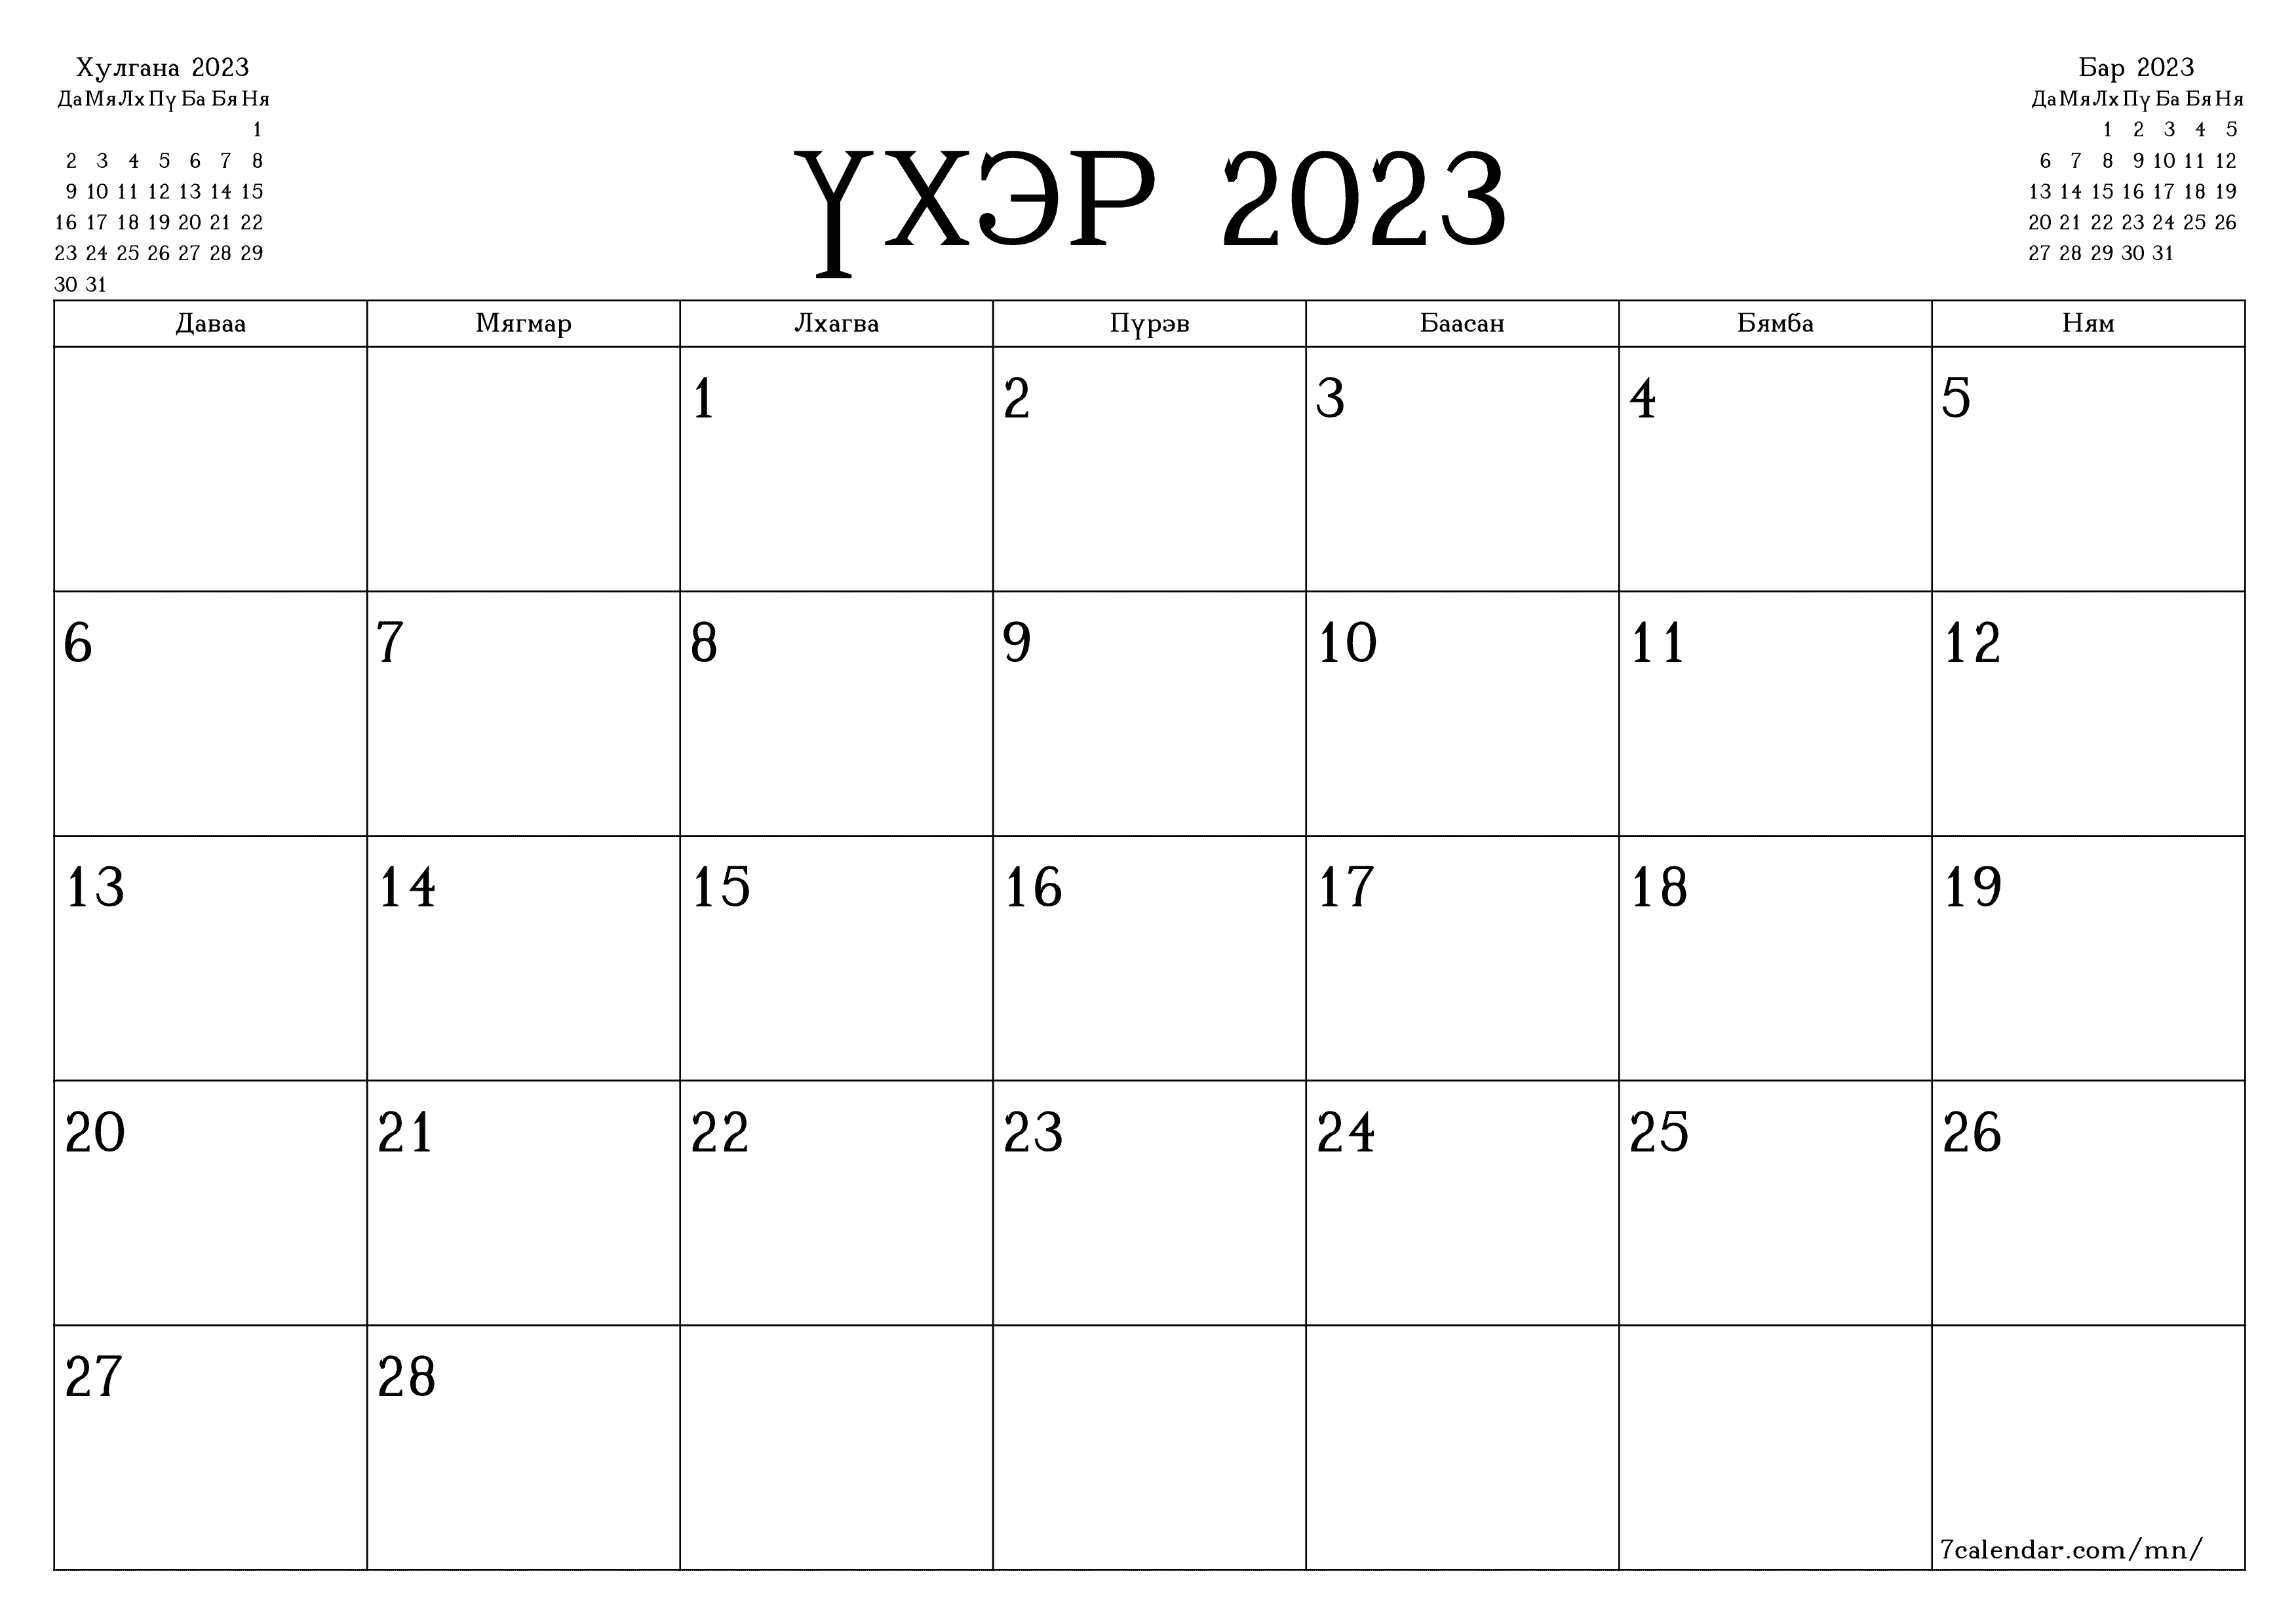 Үхэр 2023 сарын сар бүрийн төлөвлөгөөг тэмдэглэлтэй хоосон байлгаж, PDF хэлбэрээр хадгалж, хэвлэ PNG Mongolian